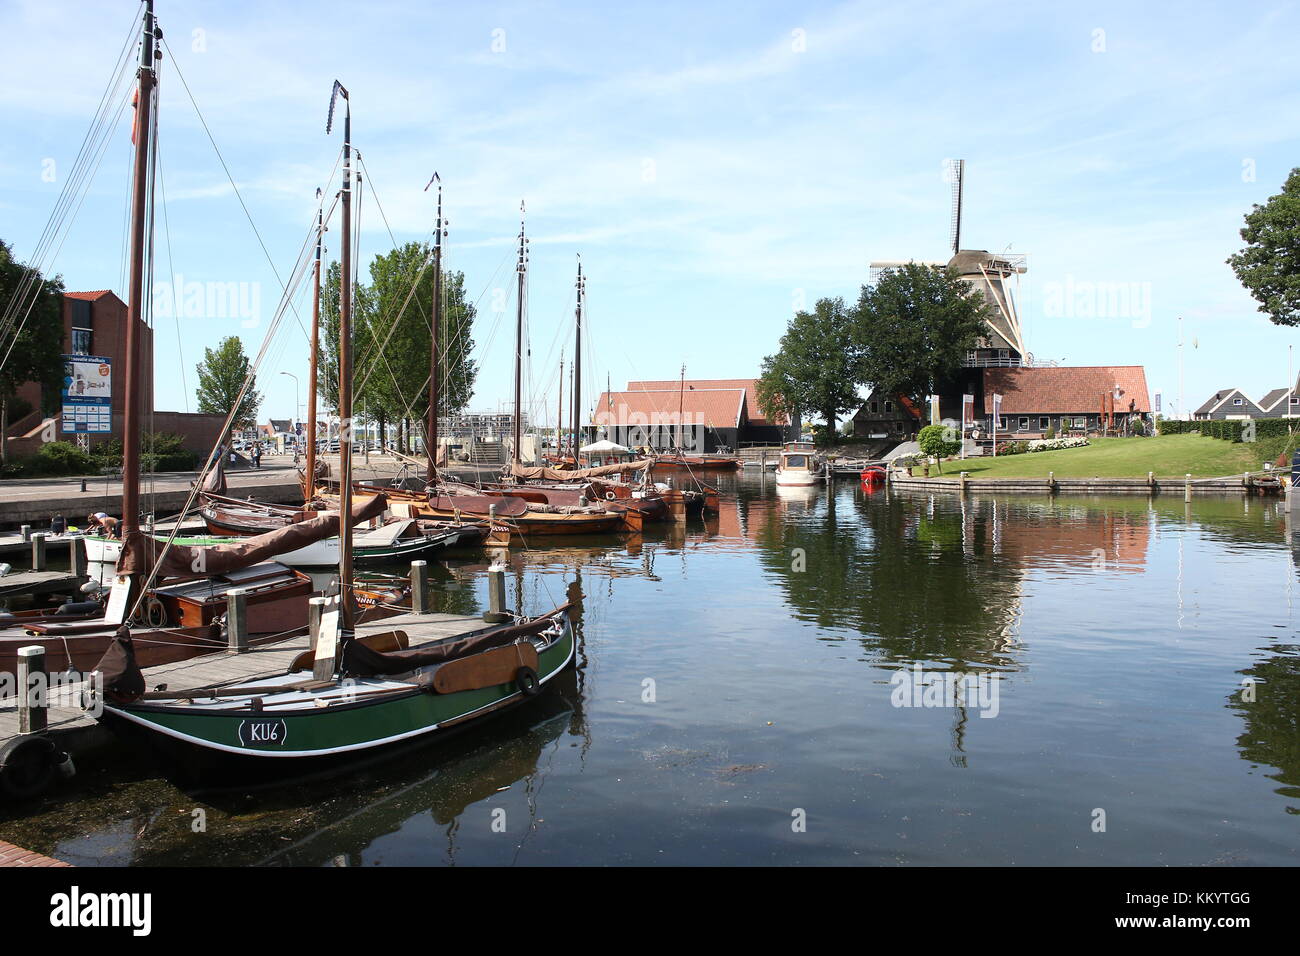 Harderwijk Vissershaven (Fishing Harbour, nowadays recreational), Harderwijk, The Netherlands. In background corn mill De Hoop. Stock Photo